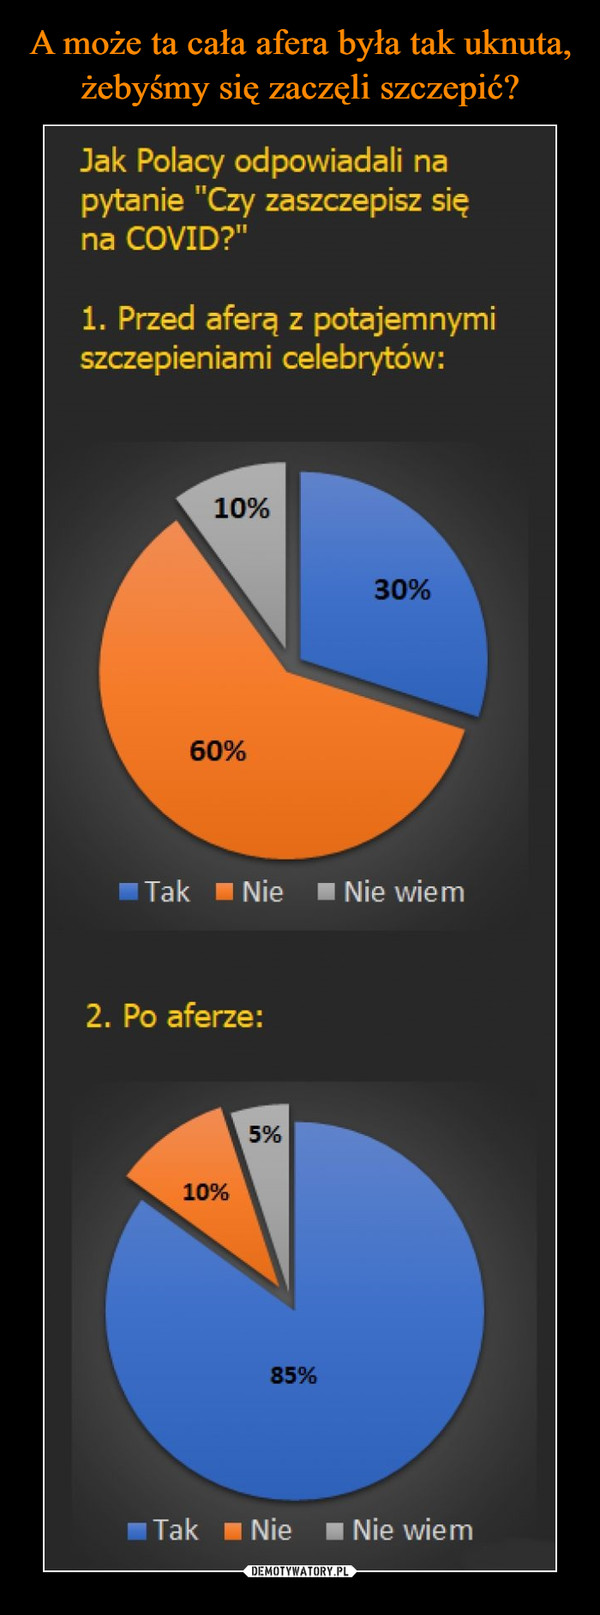  –  Jak Polacy odpowiadali na pytanie "Czy zaszczepisz się na COVID?" 1. Przed aferą z potajemnymi szczepieniami celebrytów: 60% Tak Nie • Nie wiem 2. Po aferze: 5% 10% Tak • Nie • Nie wiem